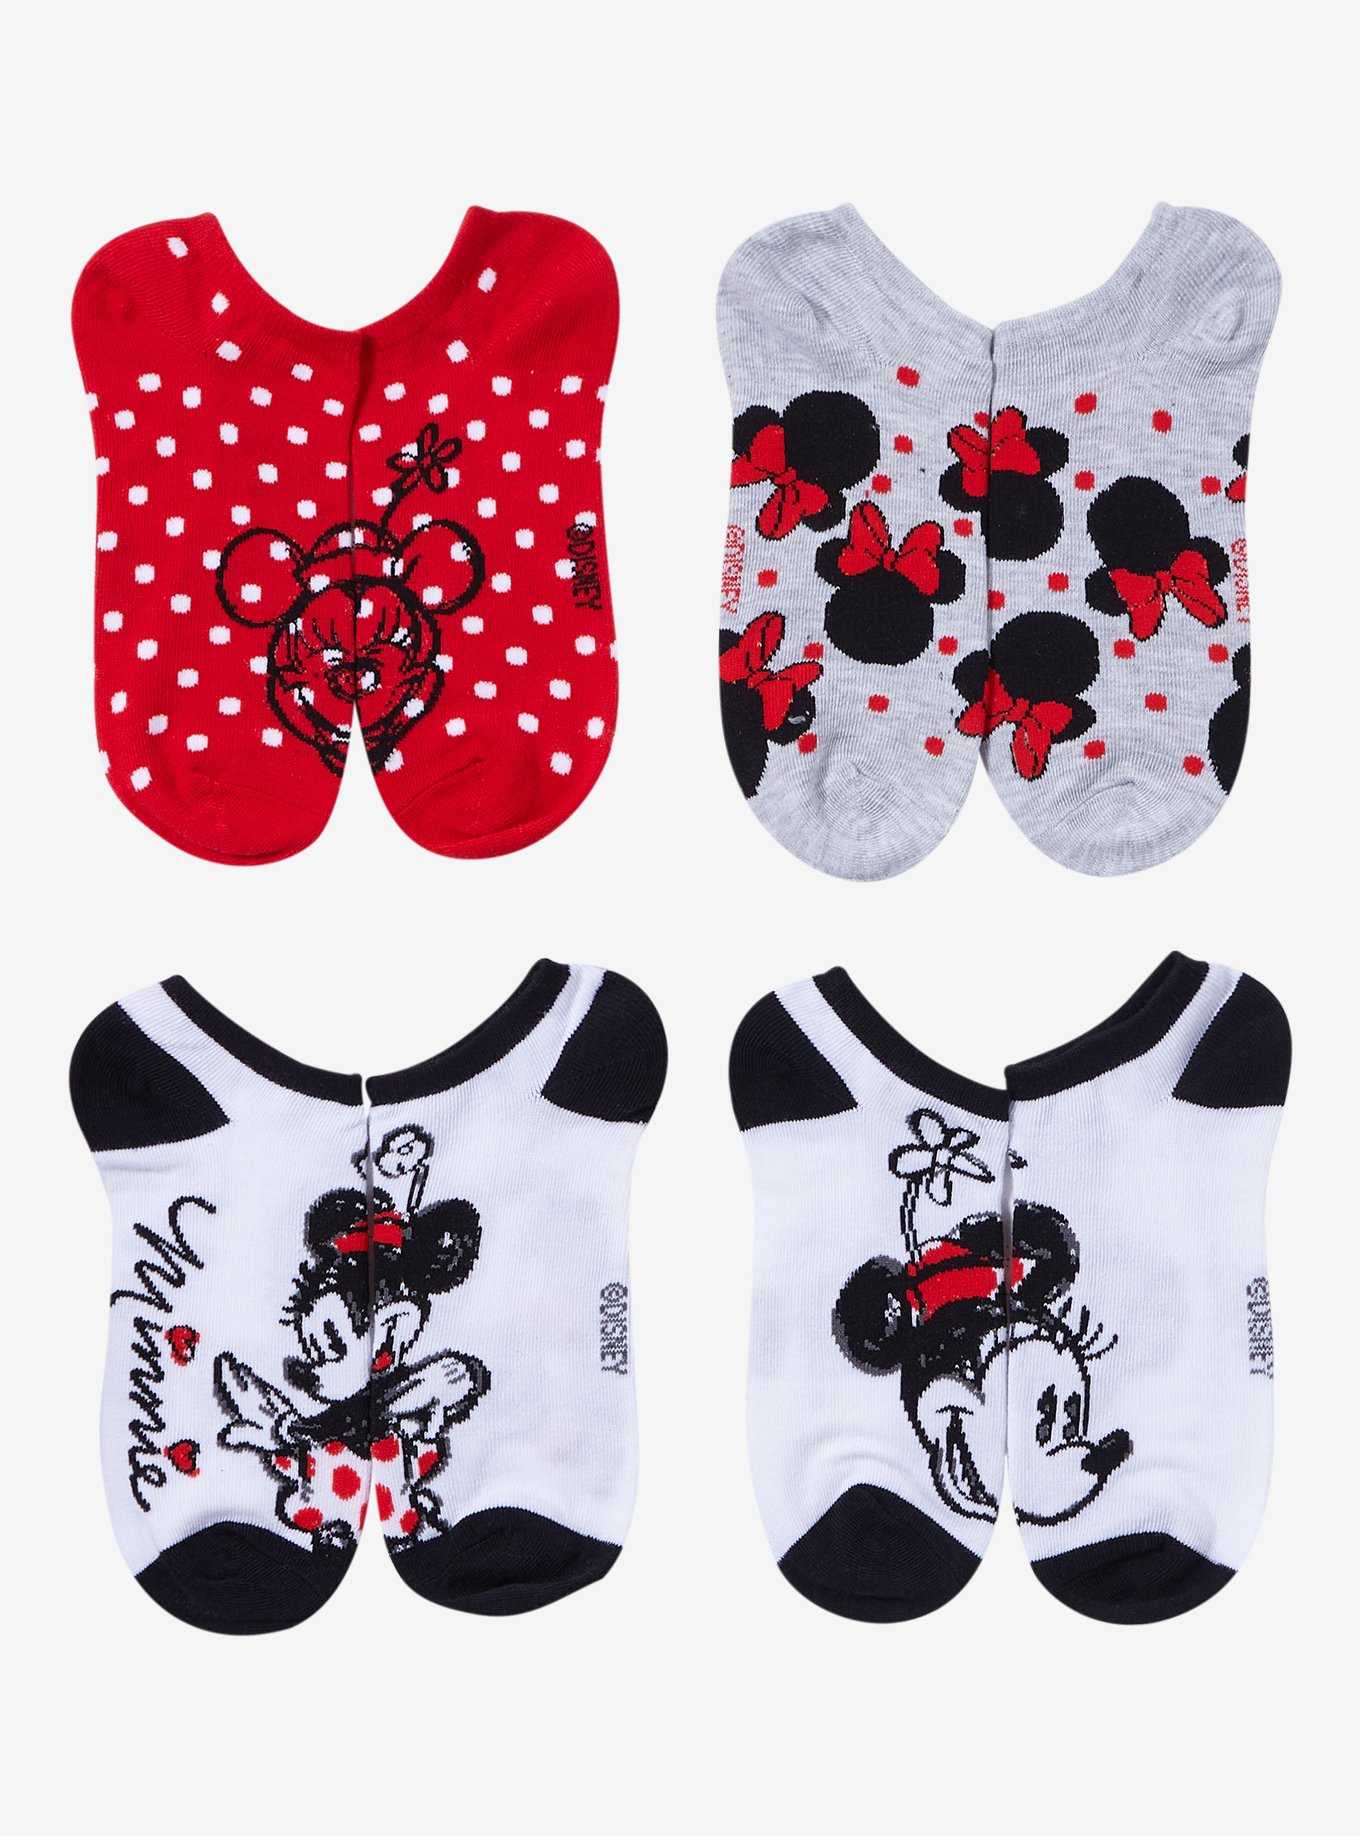 Disney Minnie Mouse Dots No-Show Socks 5 Pair, , hi-res